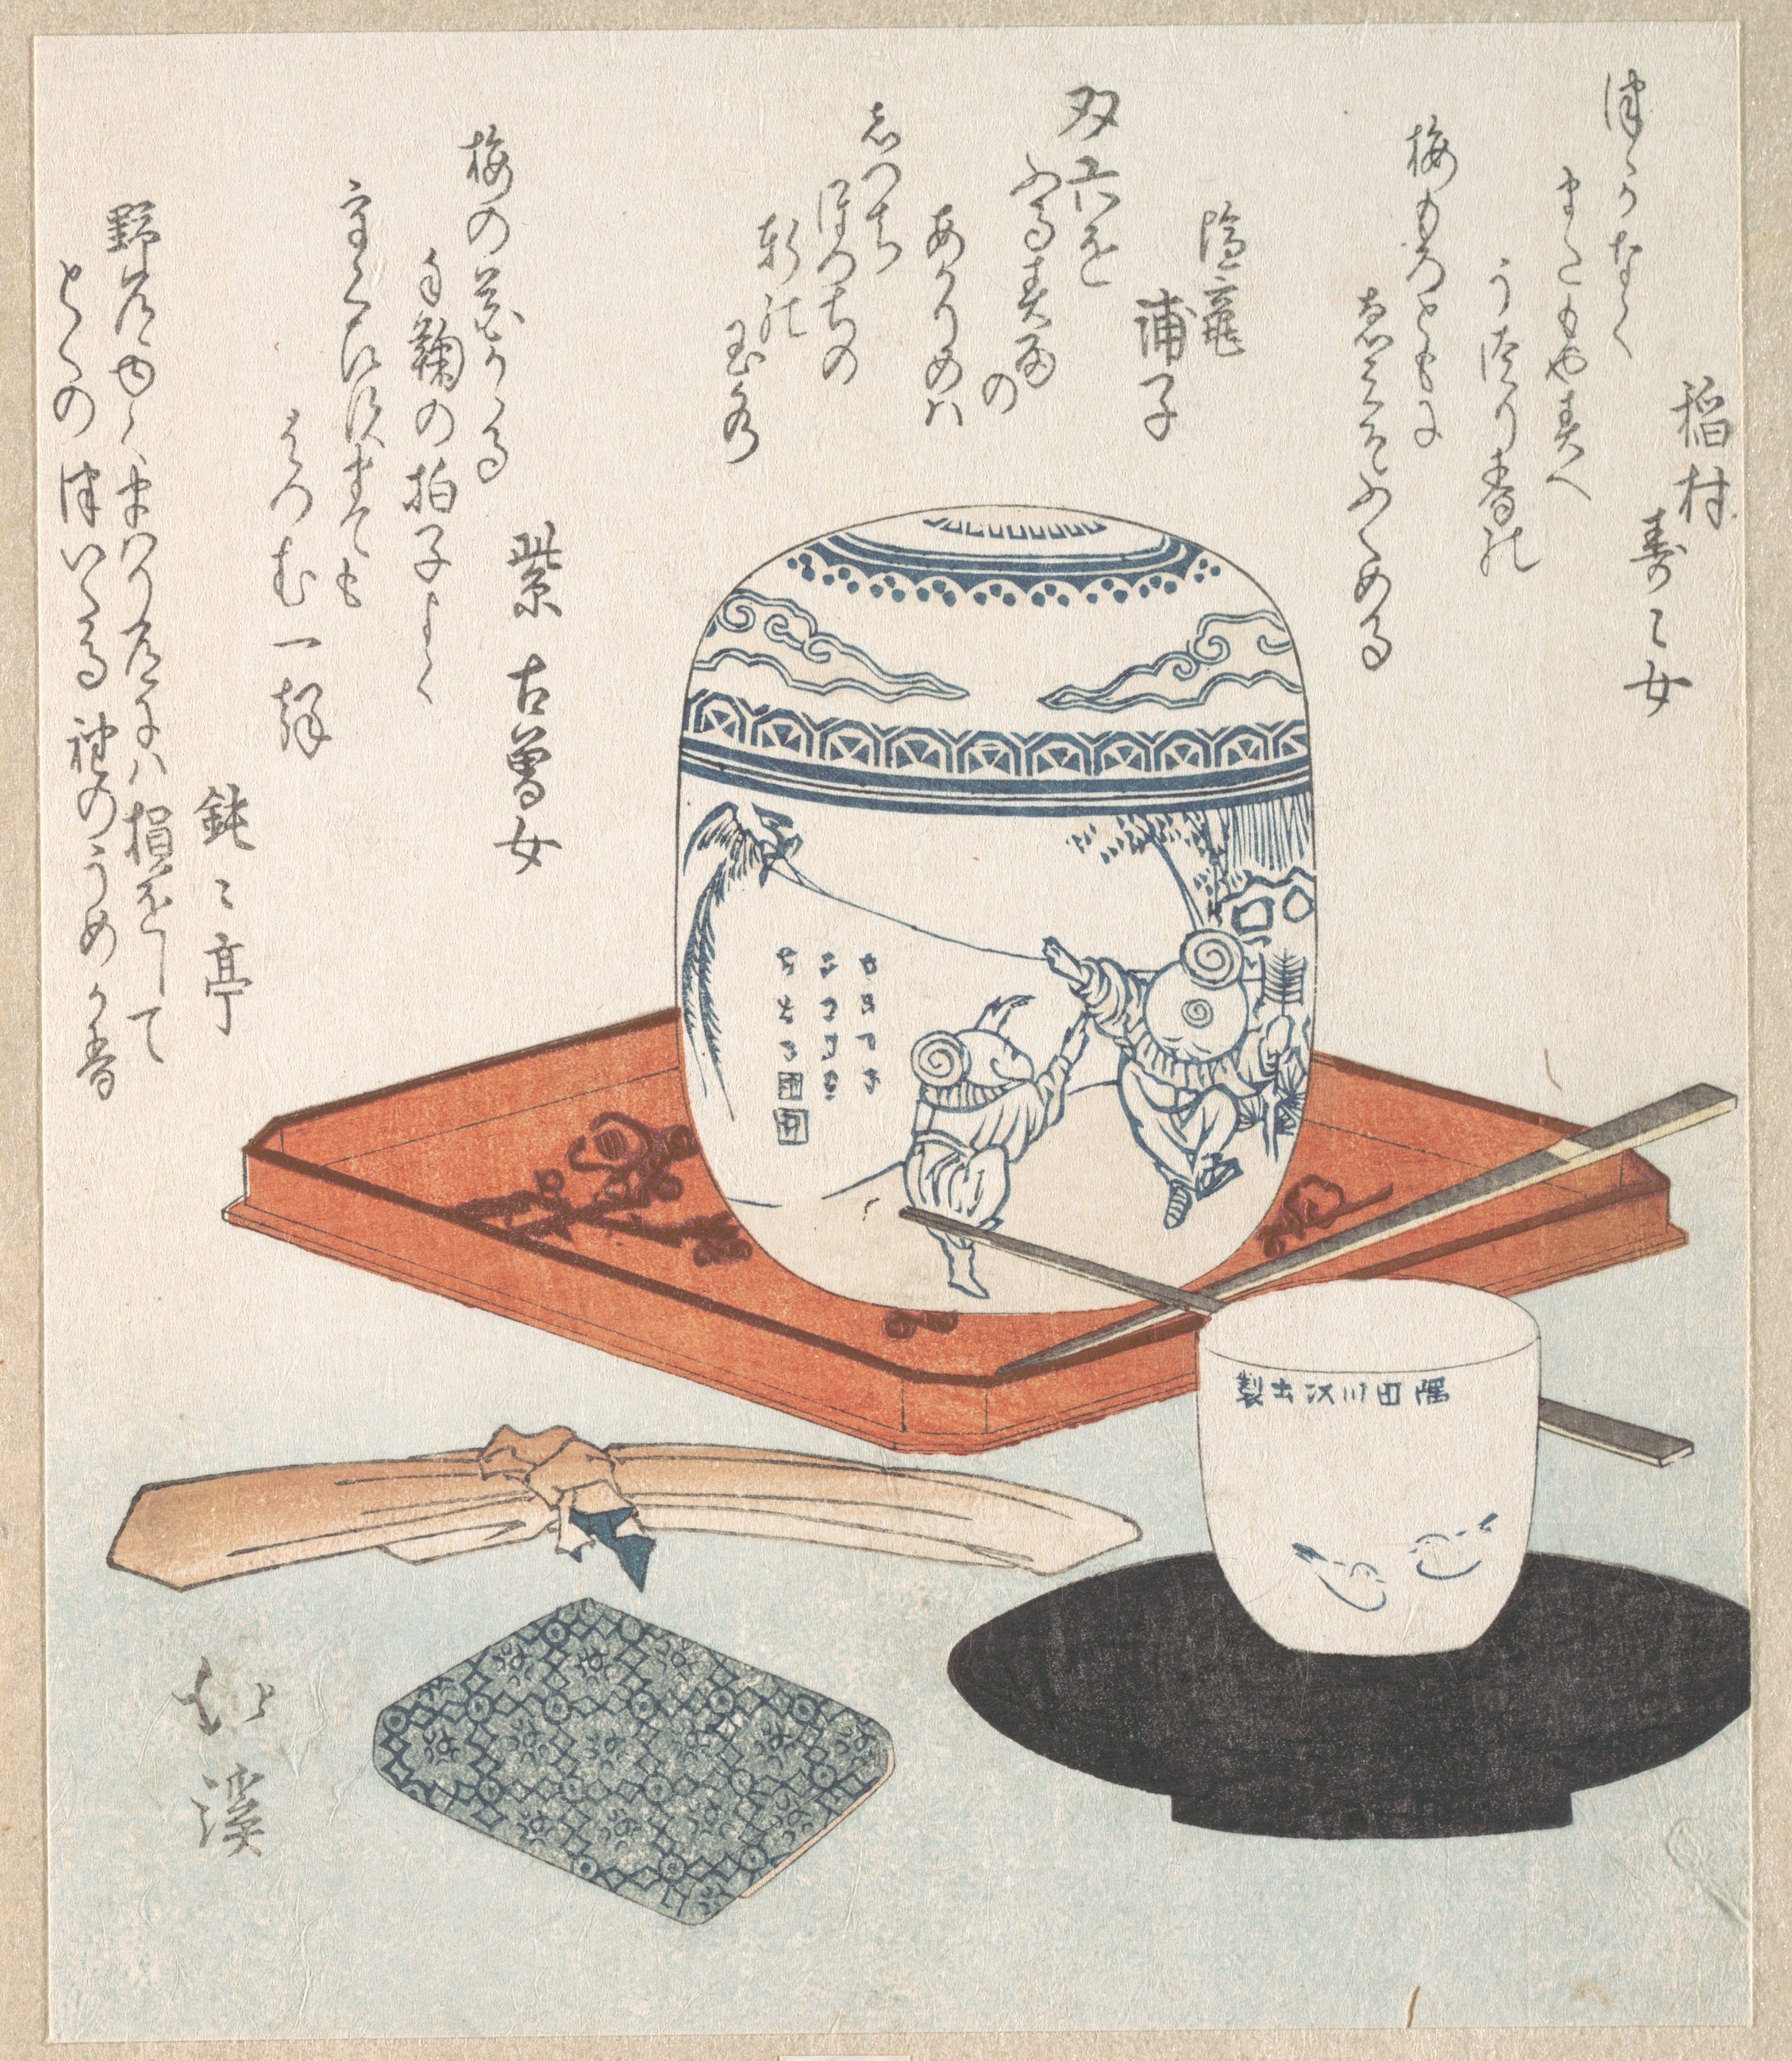 Objets pour le thé by Totoya Hokkei - 19e siècle - 19.7 x 16.7 cm Metropolitan Museum of Art